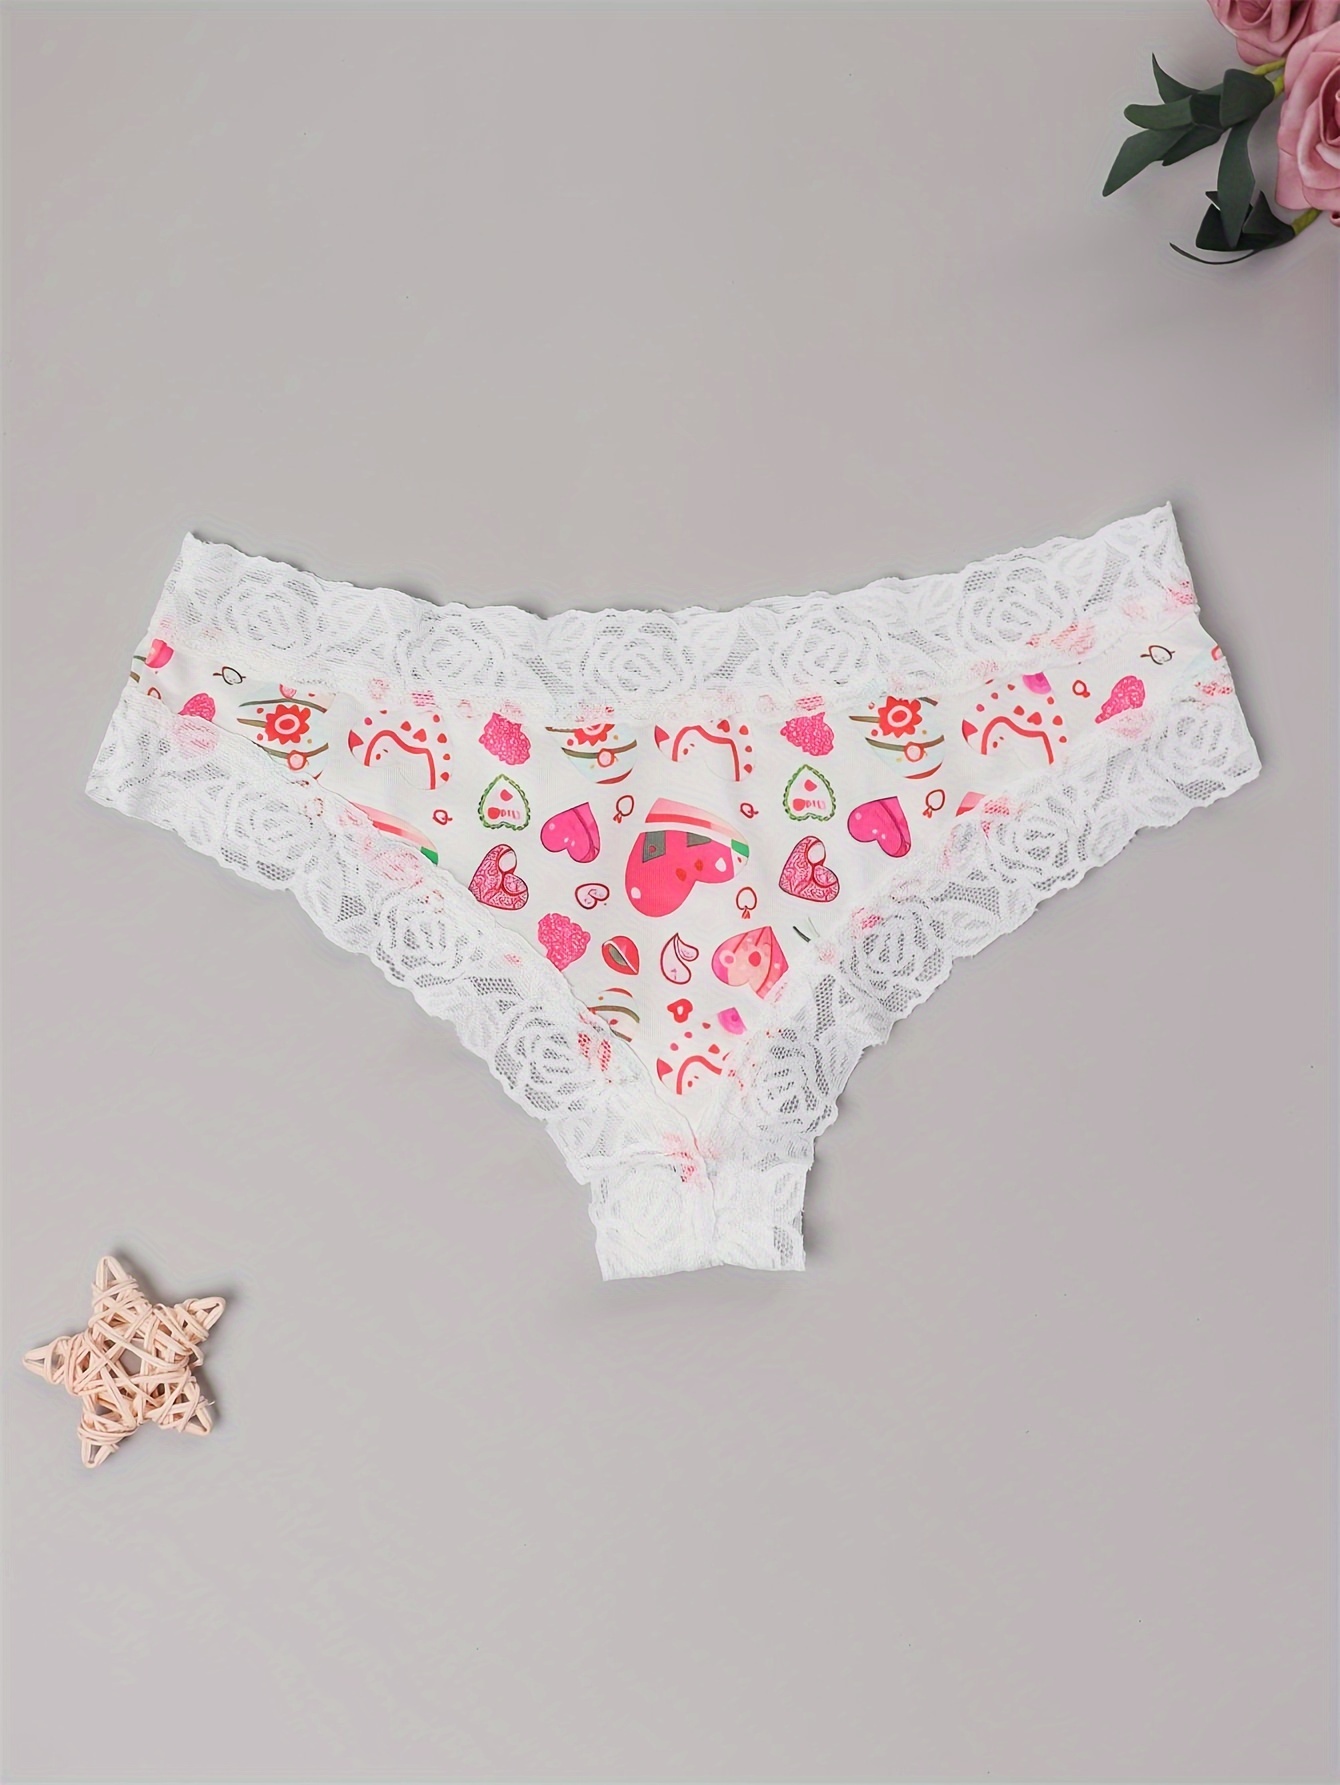 Blandoom Modern Undies Women's Valentine's Day Heart Printed Seamless  Breathable Low Waist Underwear Sexy Briefs (Style 3) Remote Panties for  Women